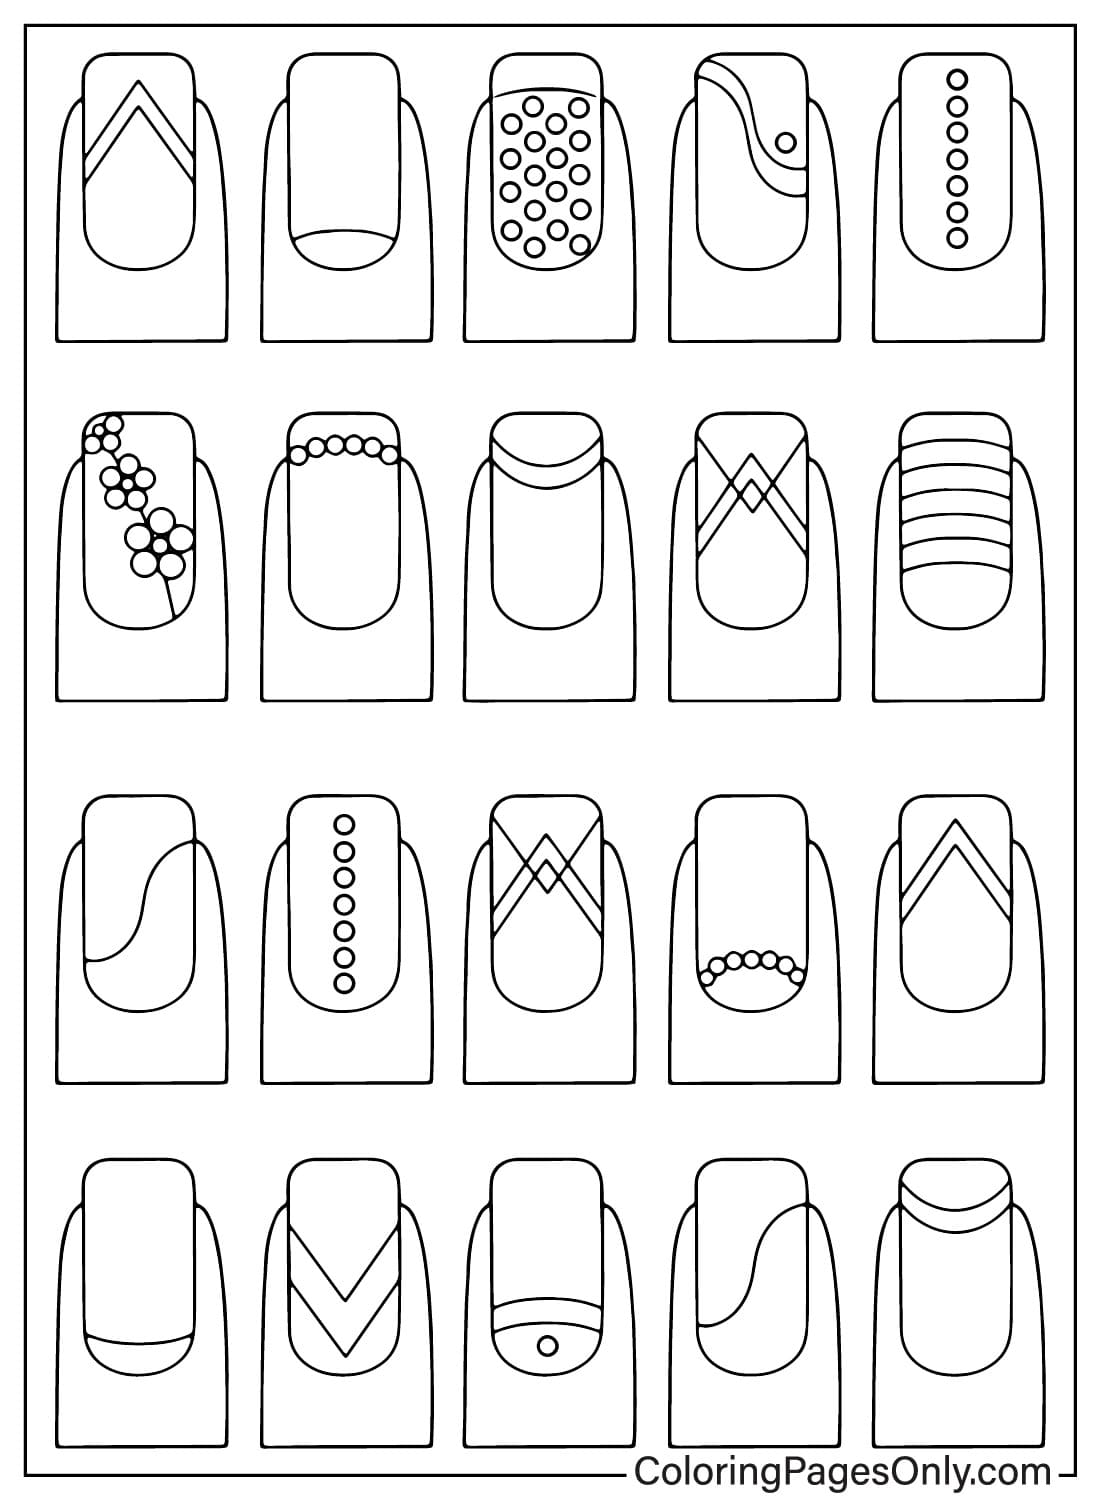 Página para colorear de uñas para imprimir gratis de Nails